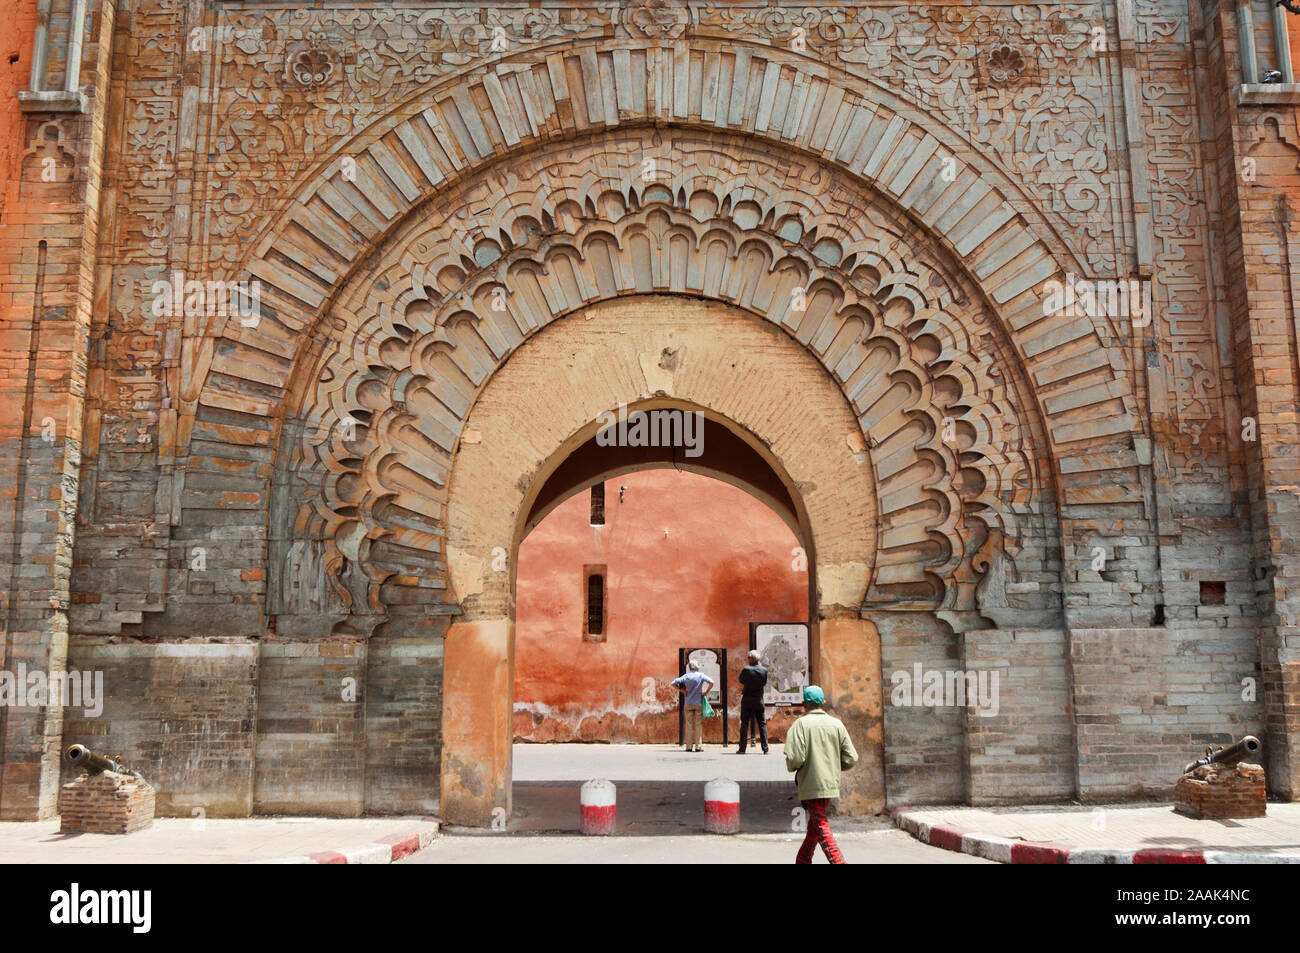 Die Bab Agnaou, einer der 19 Tore von Marrakesch. Es wurde im 12. Jahrhundert in der Zeit der Almohaden Dynastie erbaut. Marokko Stockfoto